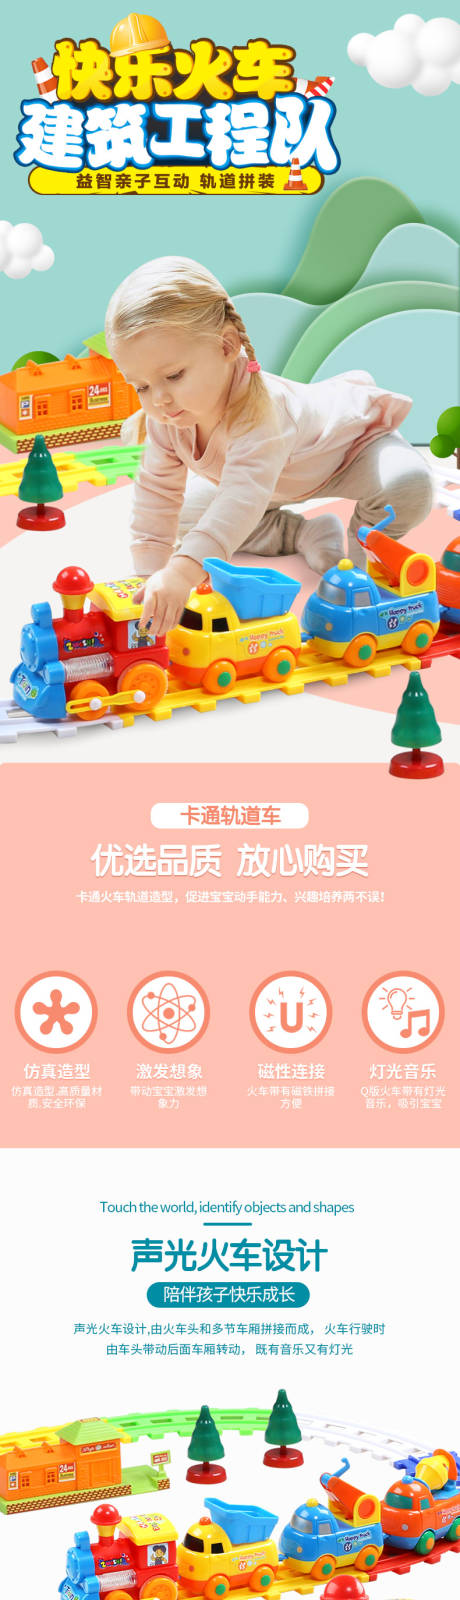 轨道火车玩具详情页